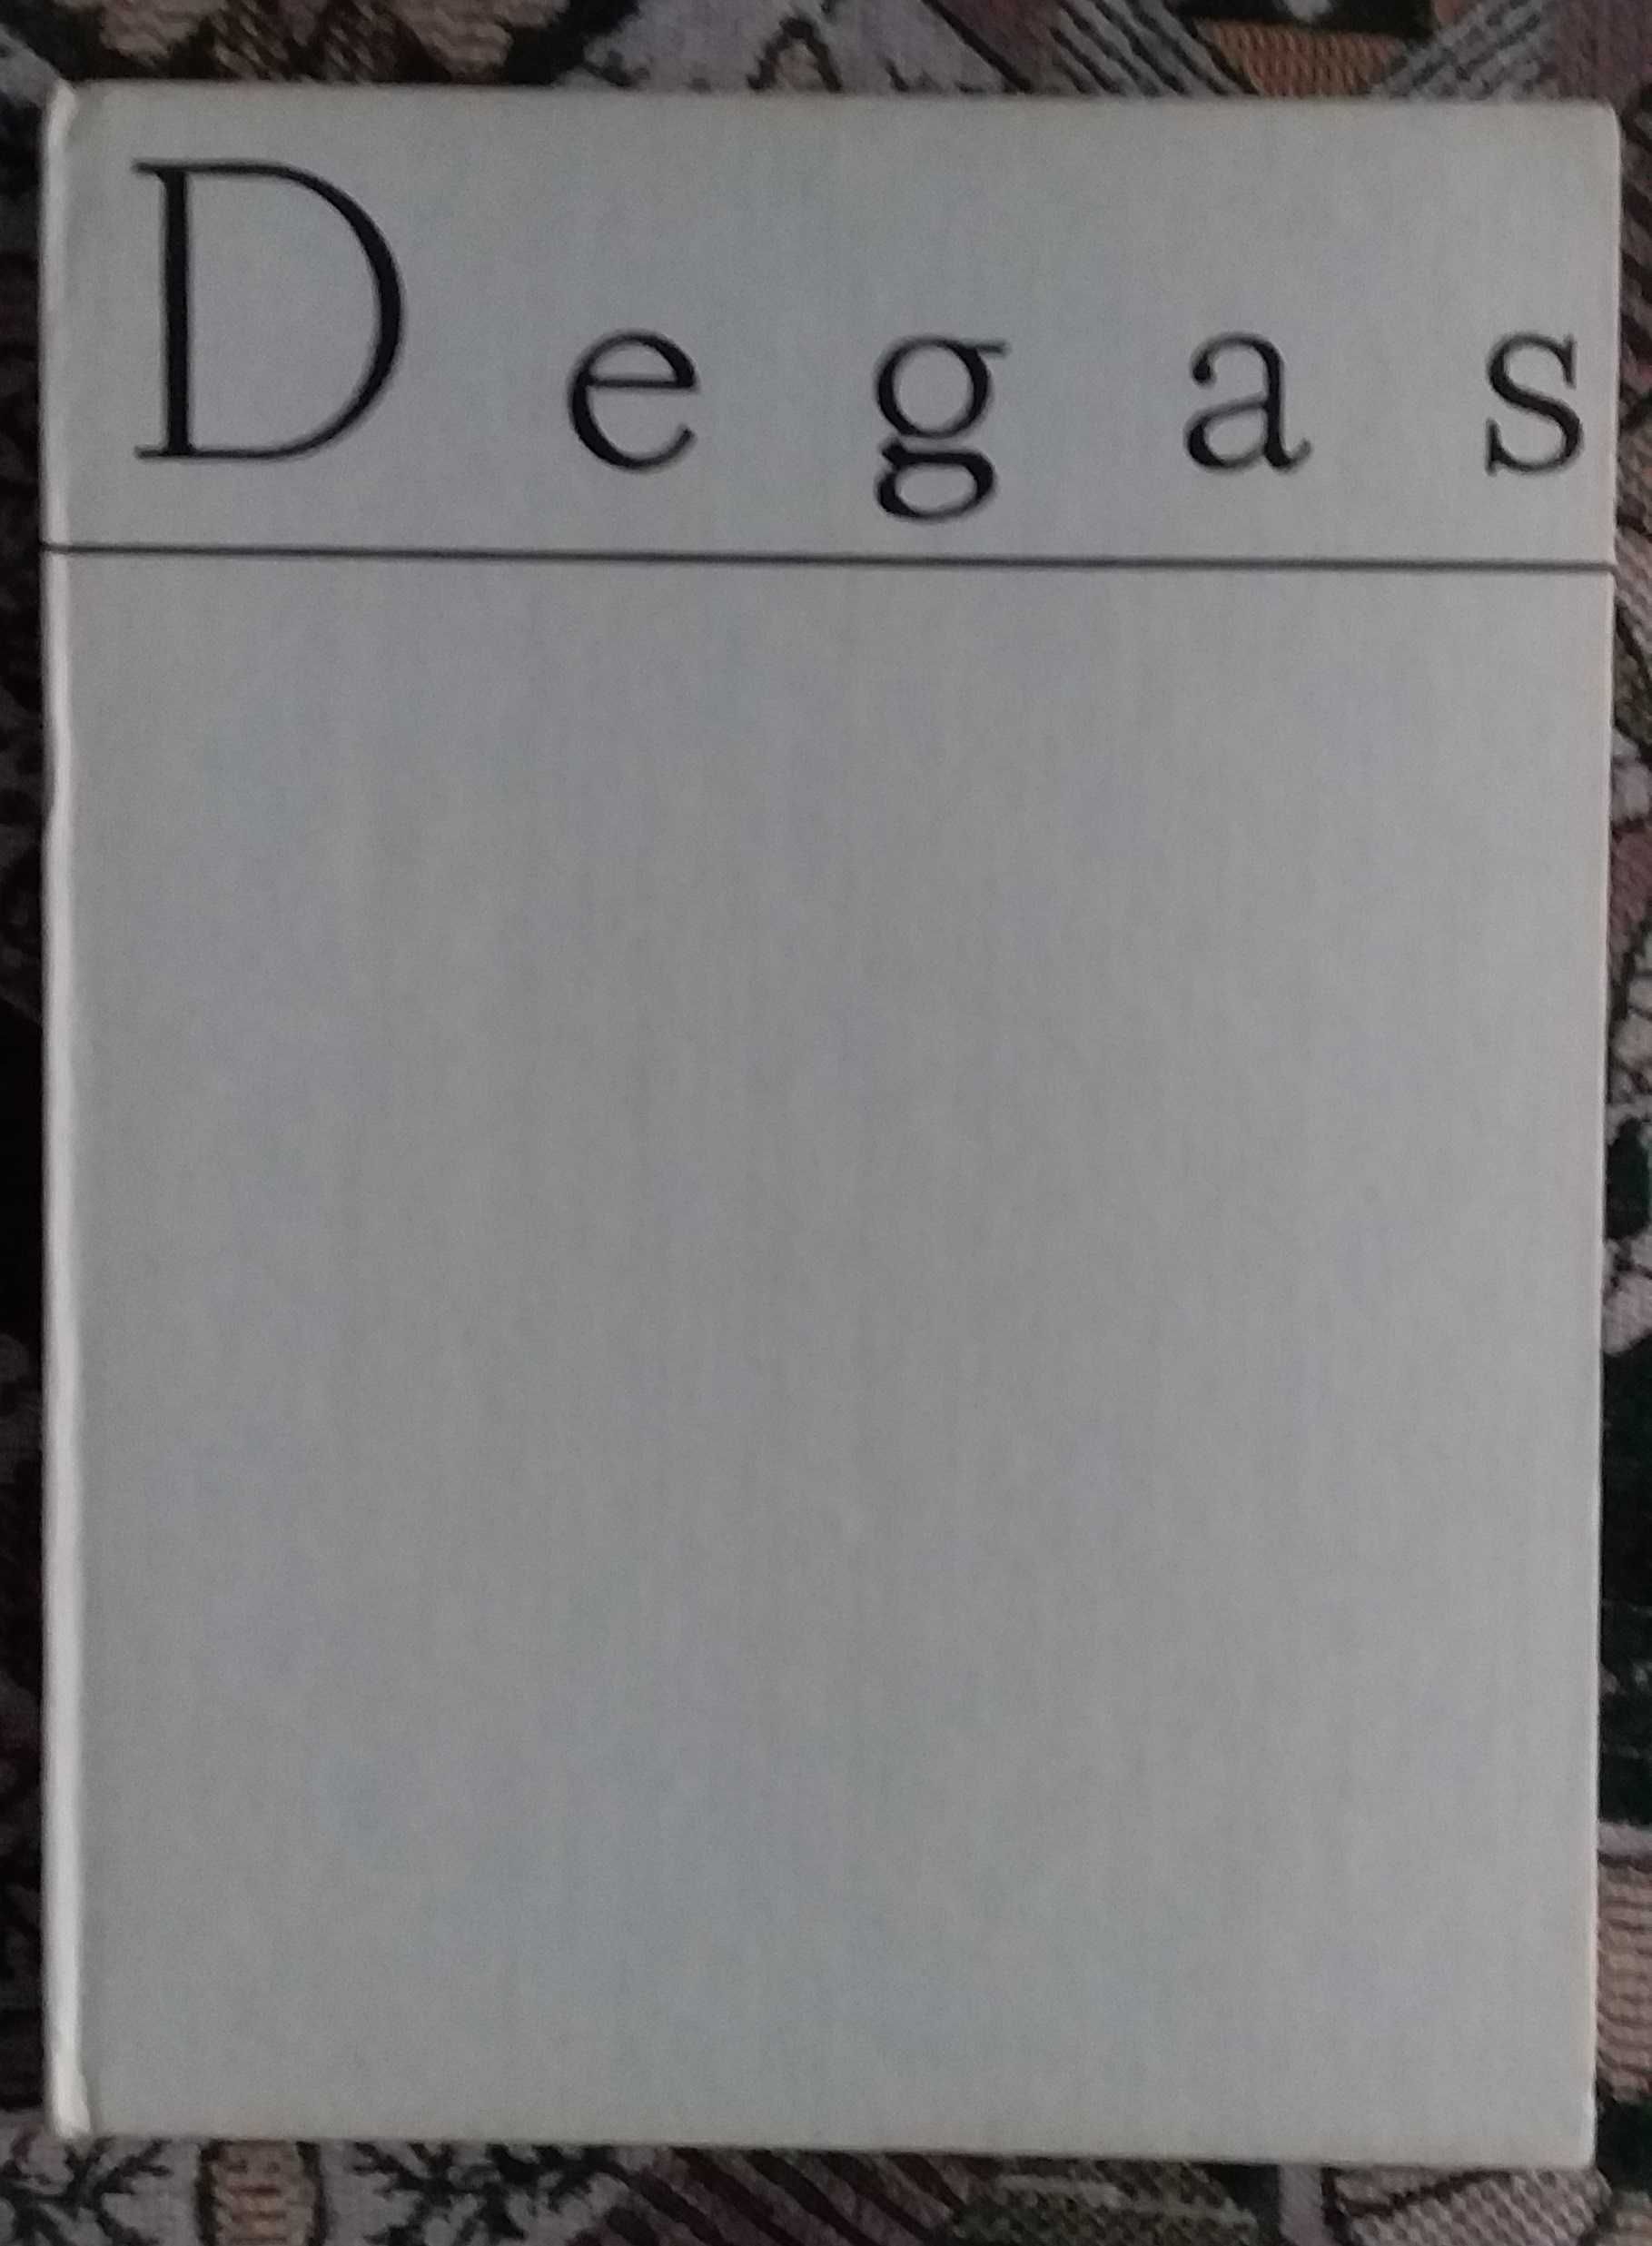 Эдгар Дега альбом репродукций , Бухарест 1983 г